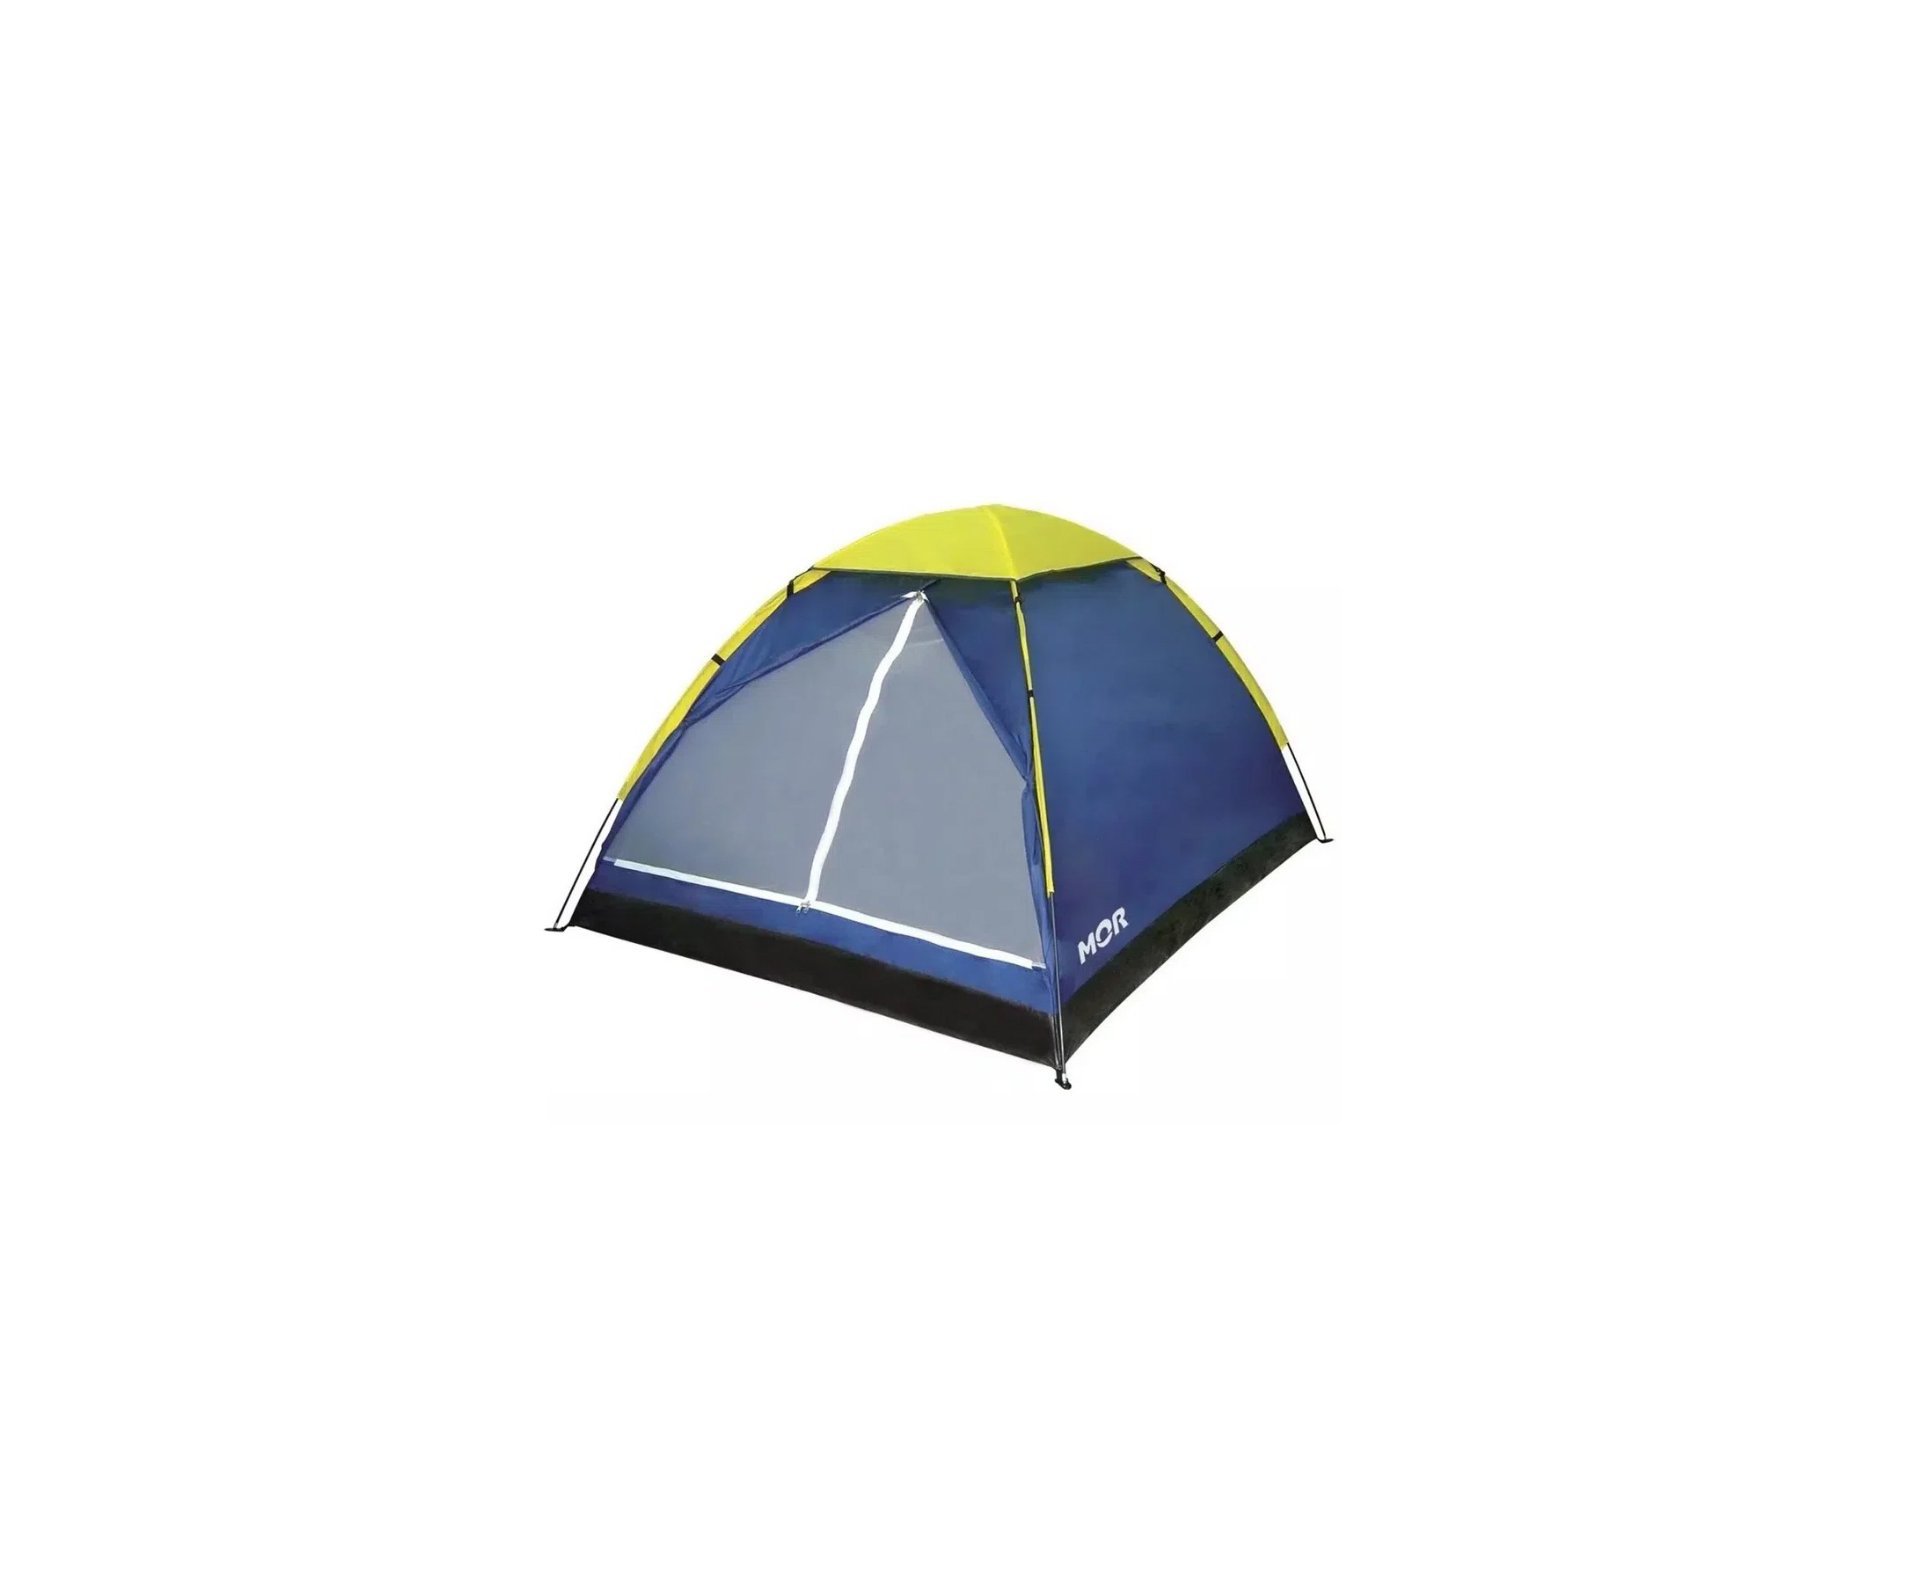 Saco dormir Bugy solteiro Camping NKT 8°C e 15°C Preto + Barraca Iglu 3 Pessoas